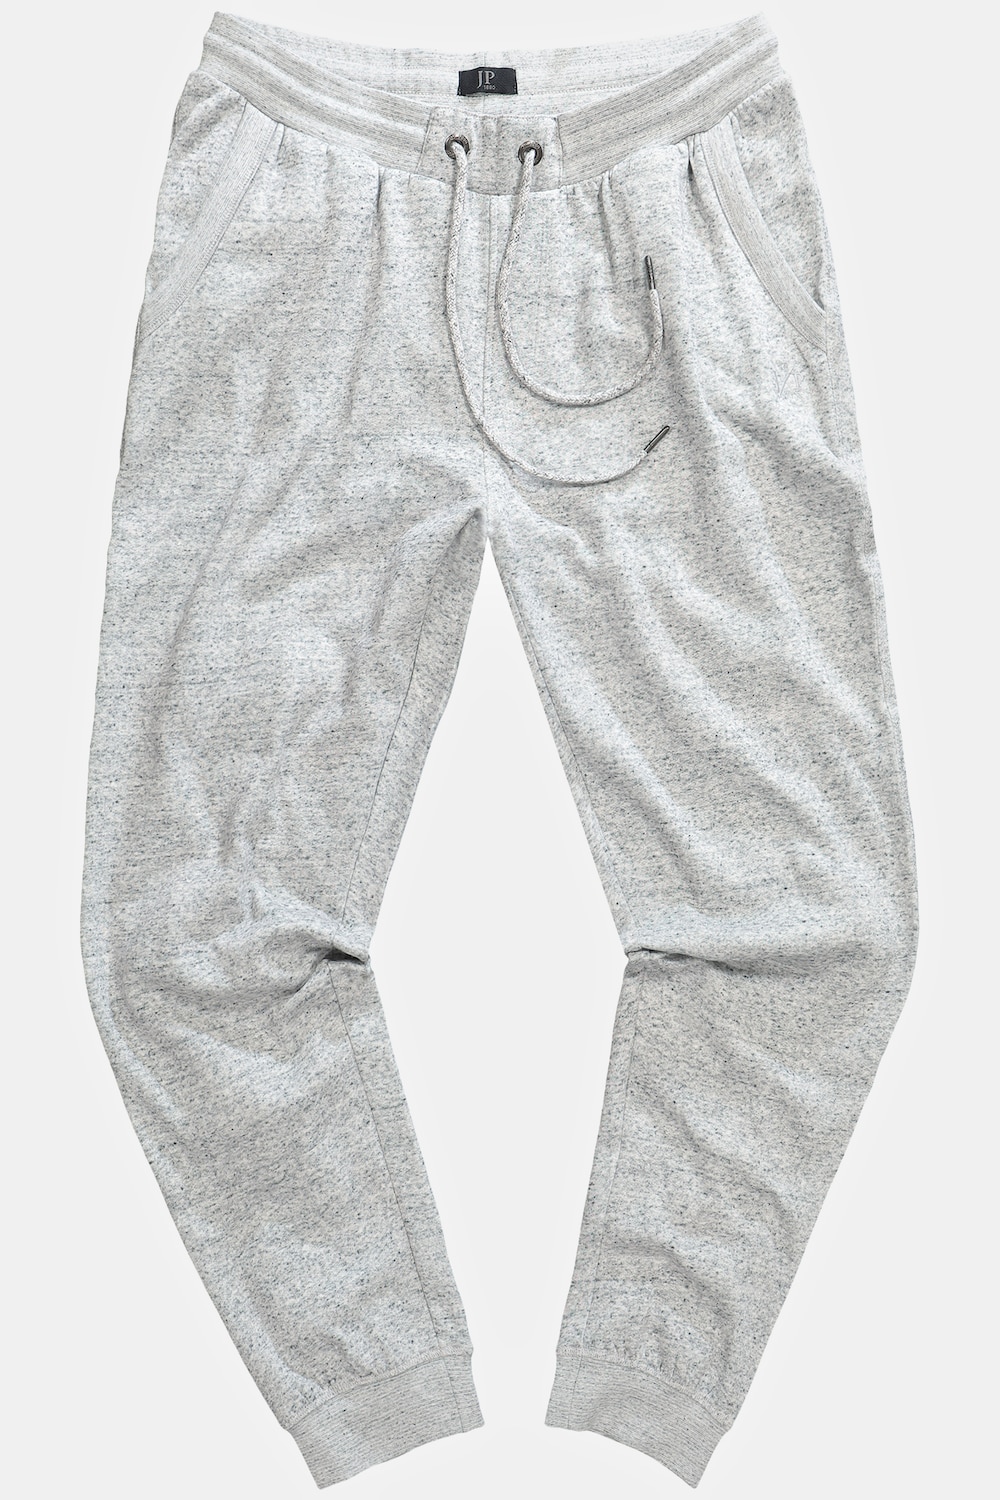 Grote Maten Sweatpants, Heren, grijs, Maat: 5XL, Katoen/Polyester, JP1880